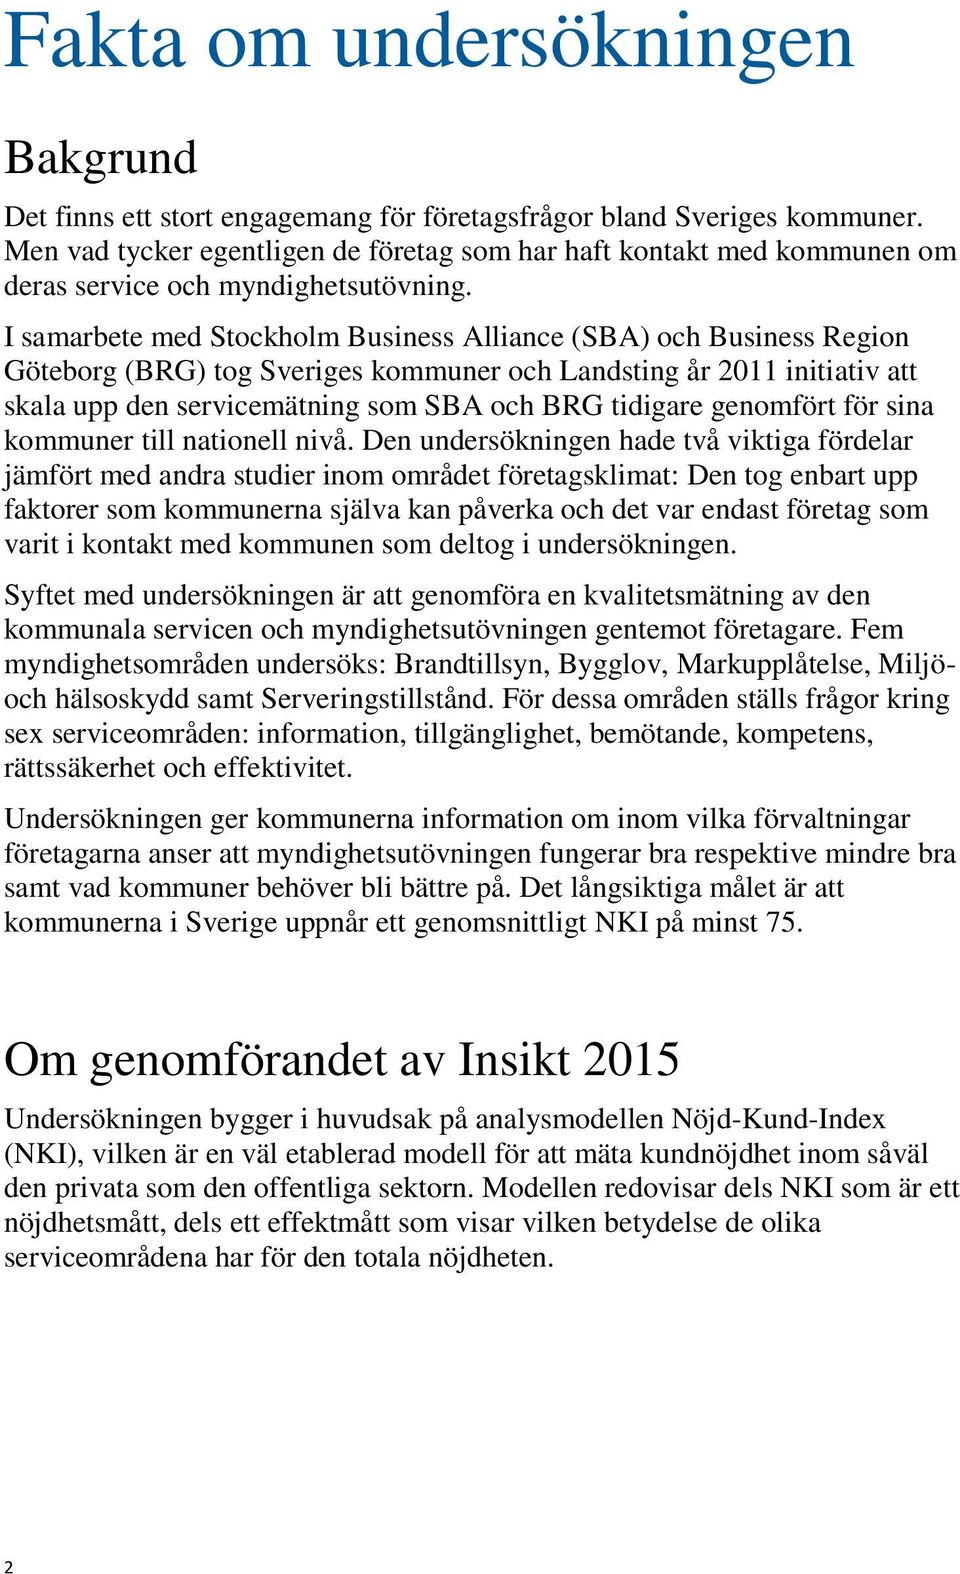 I samarbete med Stockholm Business Alliance (SBA) och Business Region Göteborg (BRG) tog Sveriges kommuner och Landsting år 2011 initiativ att skala upp den servicemätning som SBA och BRG tidigare